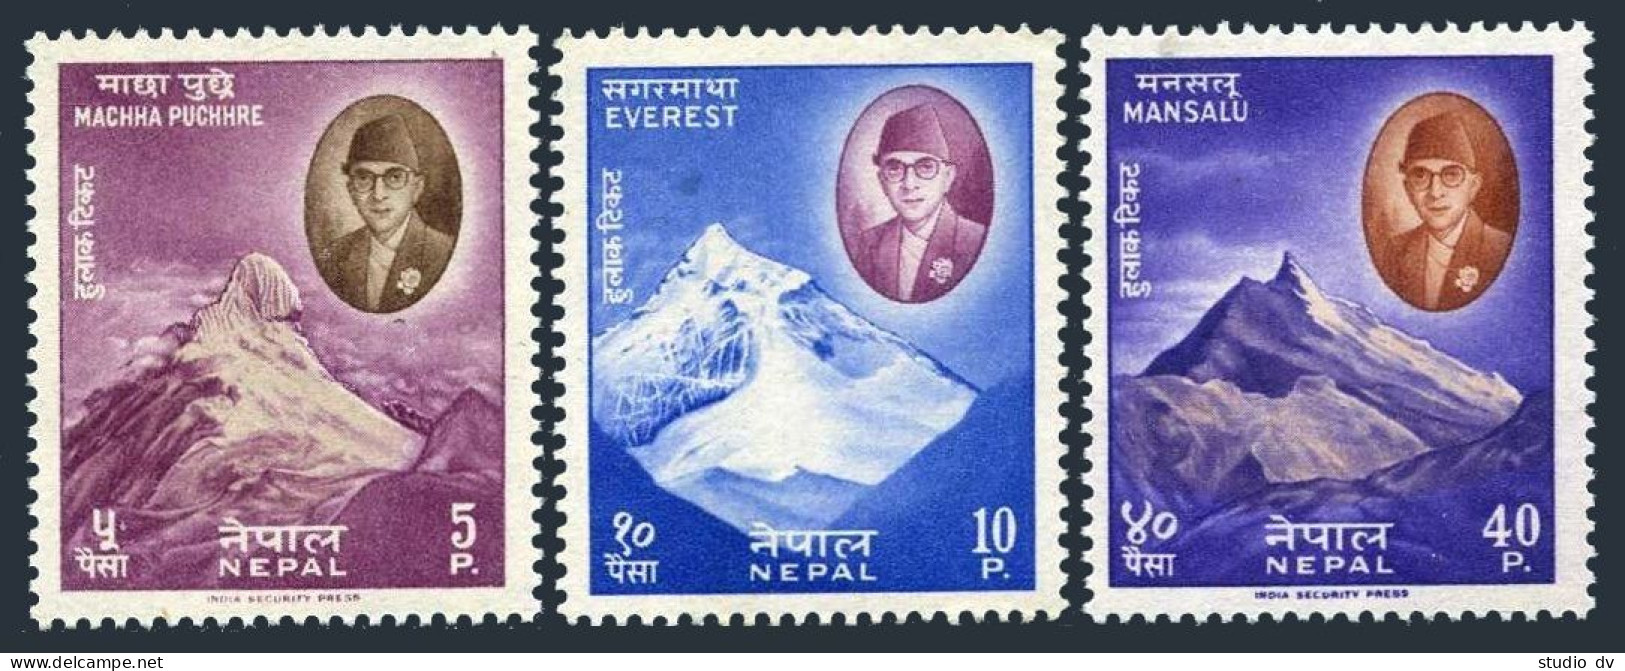 Nepal 126-128, MNH. Michel 135-137. Himalaya Mountain Peaks, 1960. - Nepal